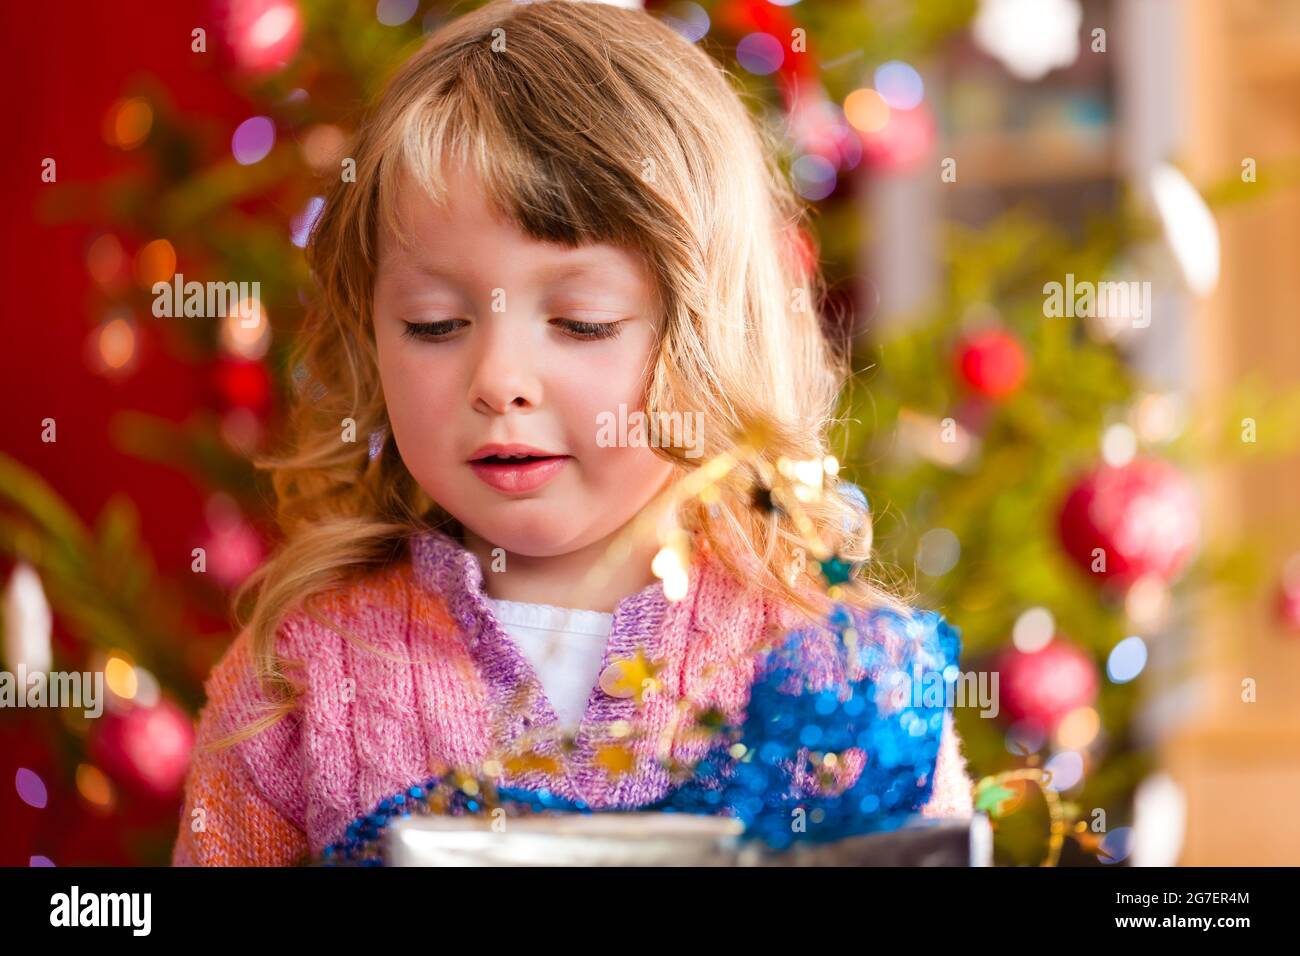 Weihnachten - glückliches kleines Mädchen mit Weihnachtsgeschenk am Heiligabend Stockfoto